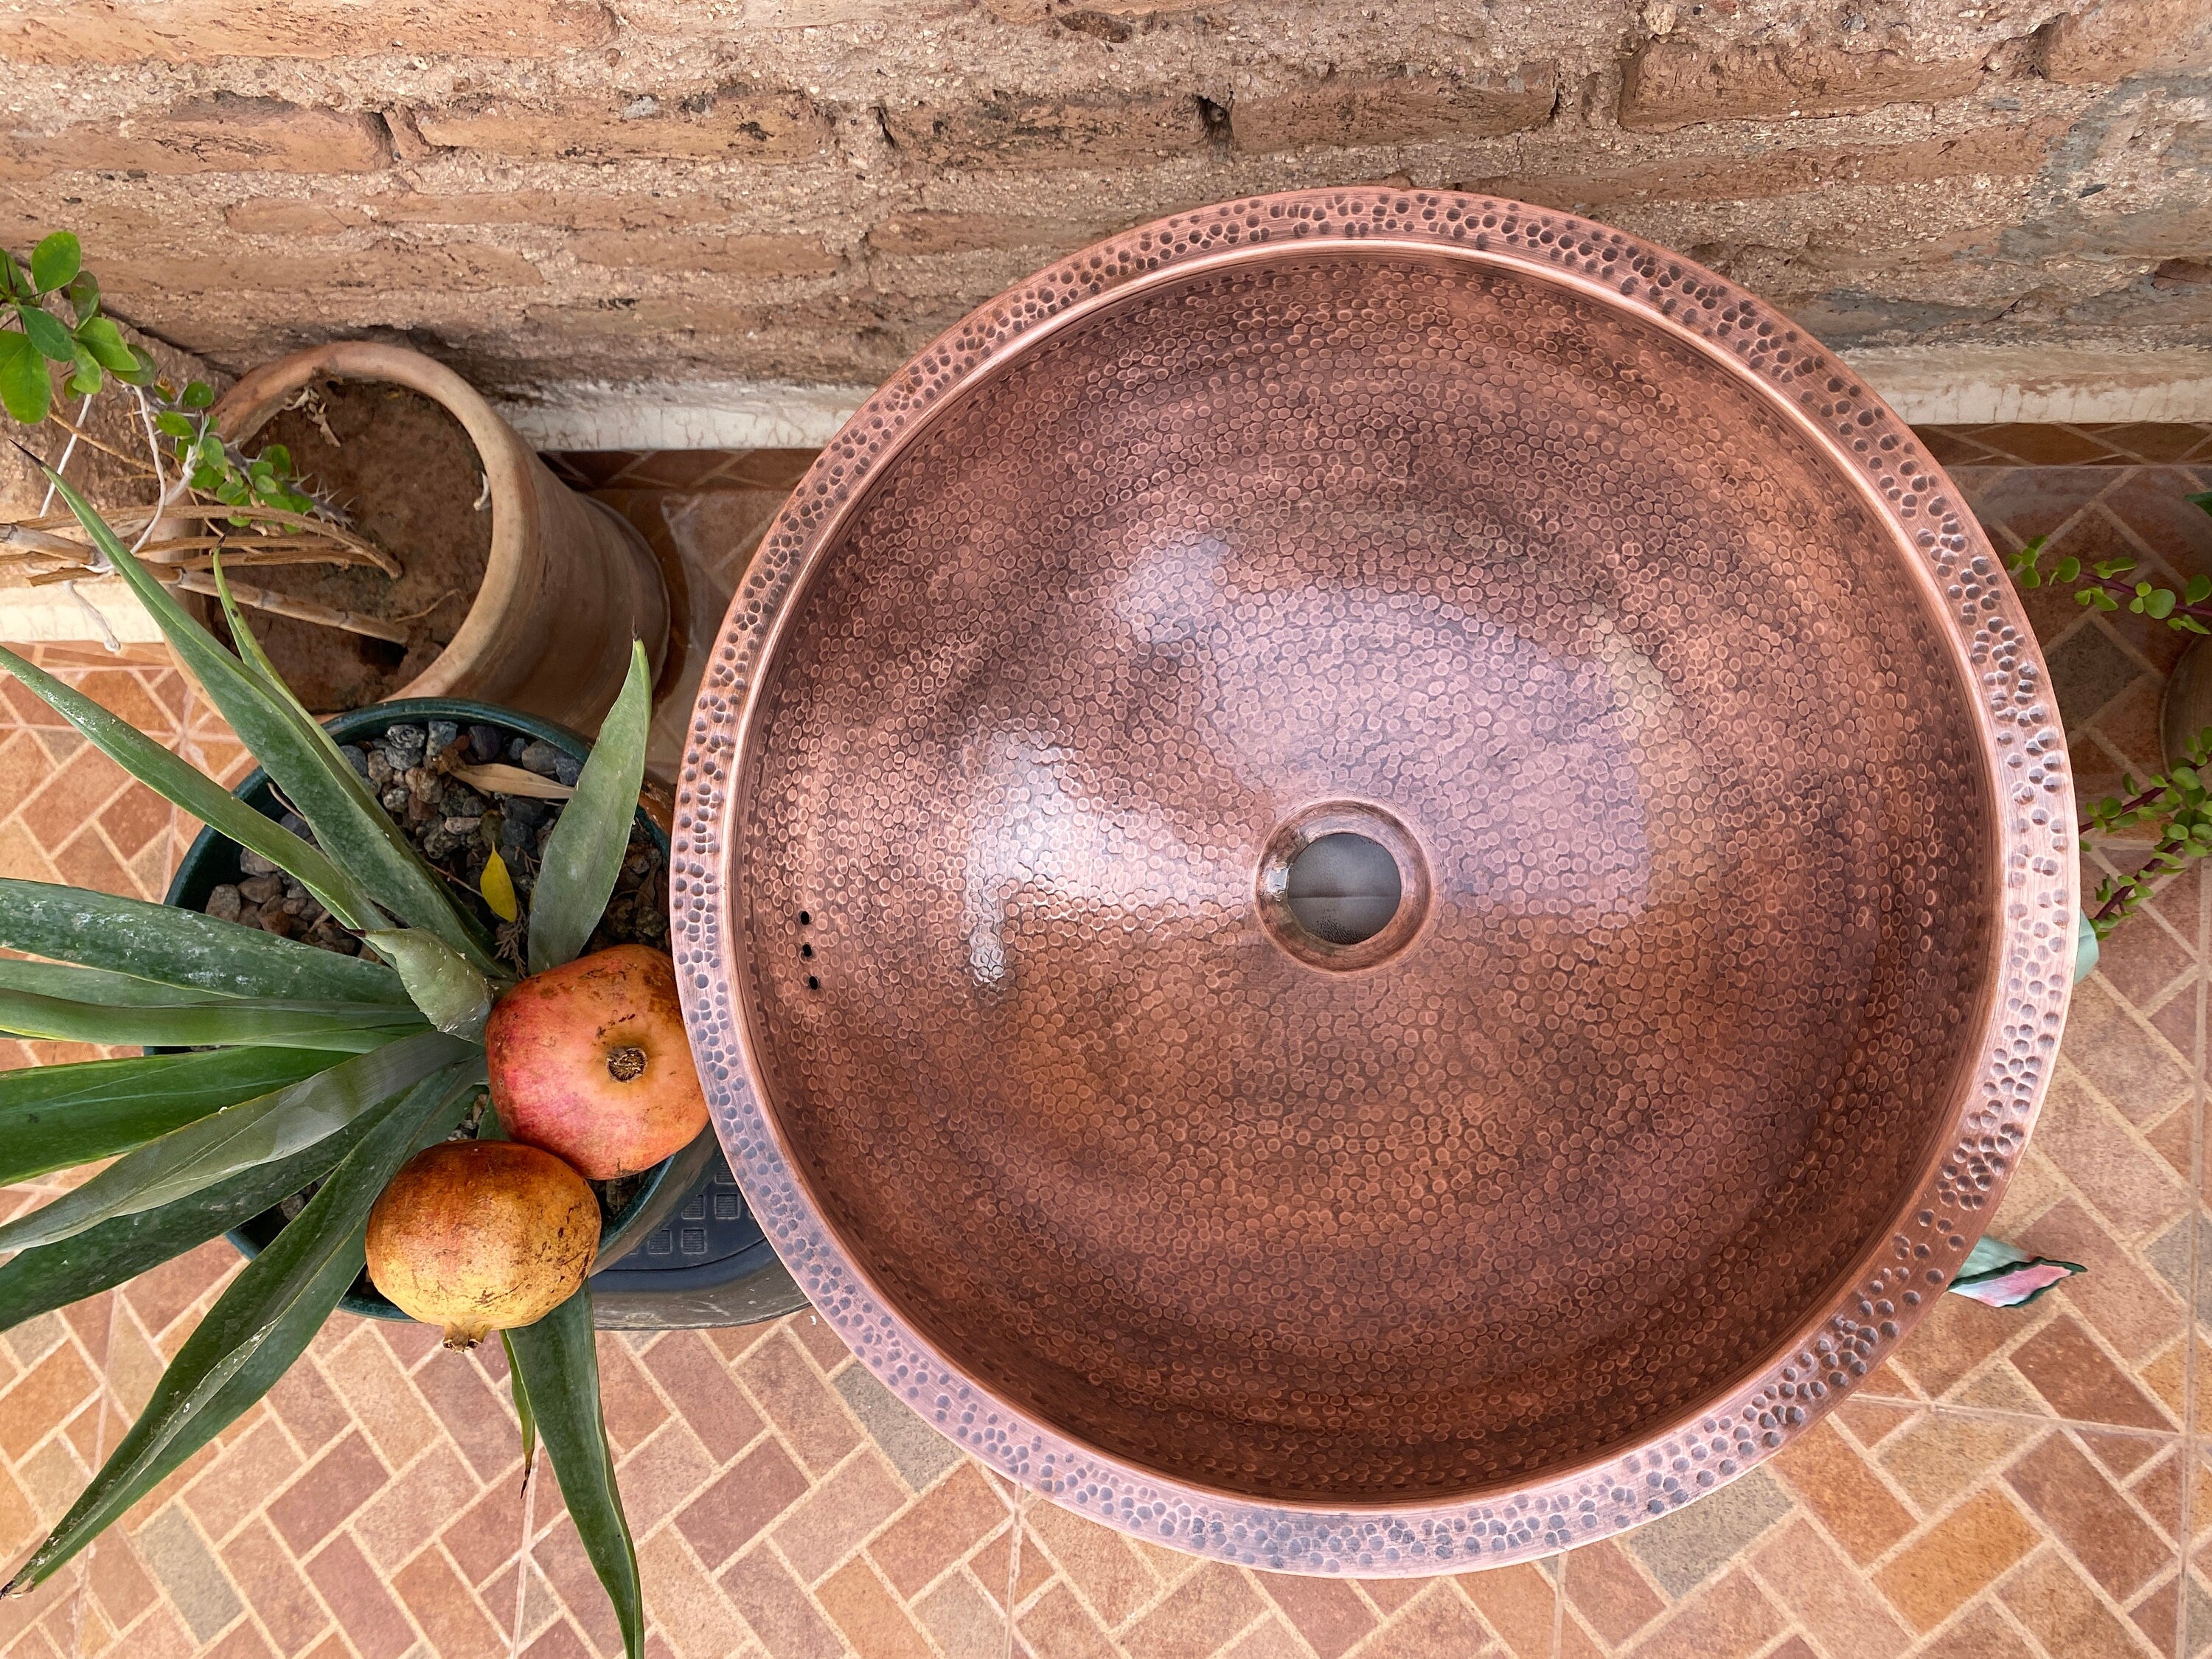 Handmade Copper Moroccan Sink - Vintage Copper Color, Marrakech Bathroom Style